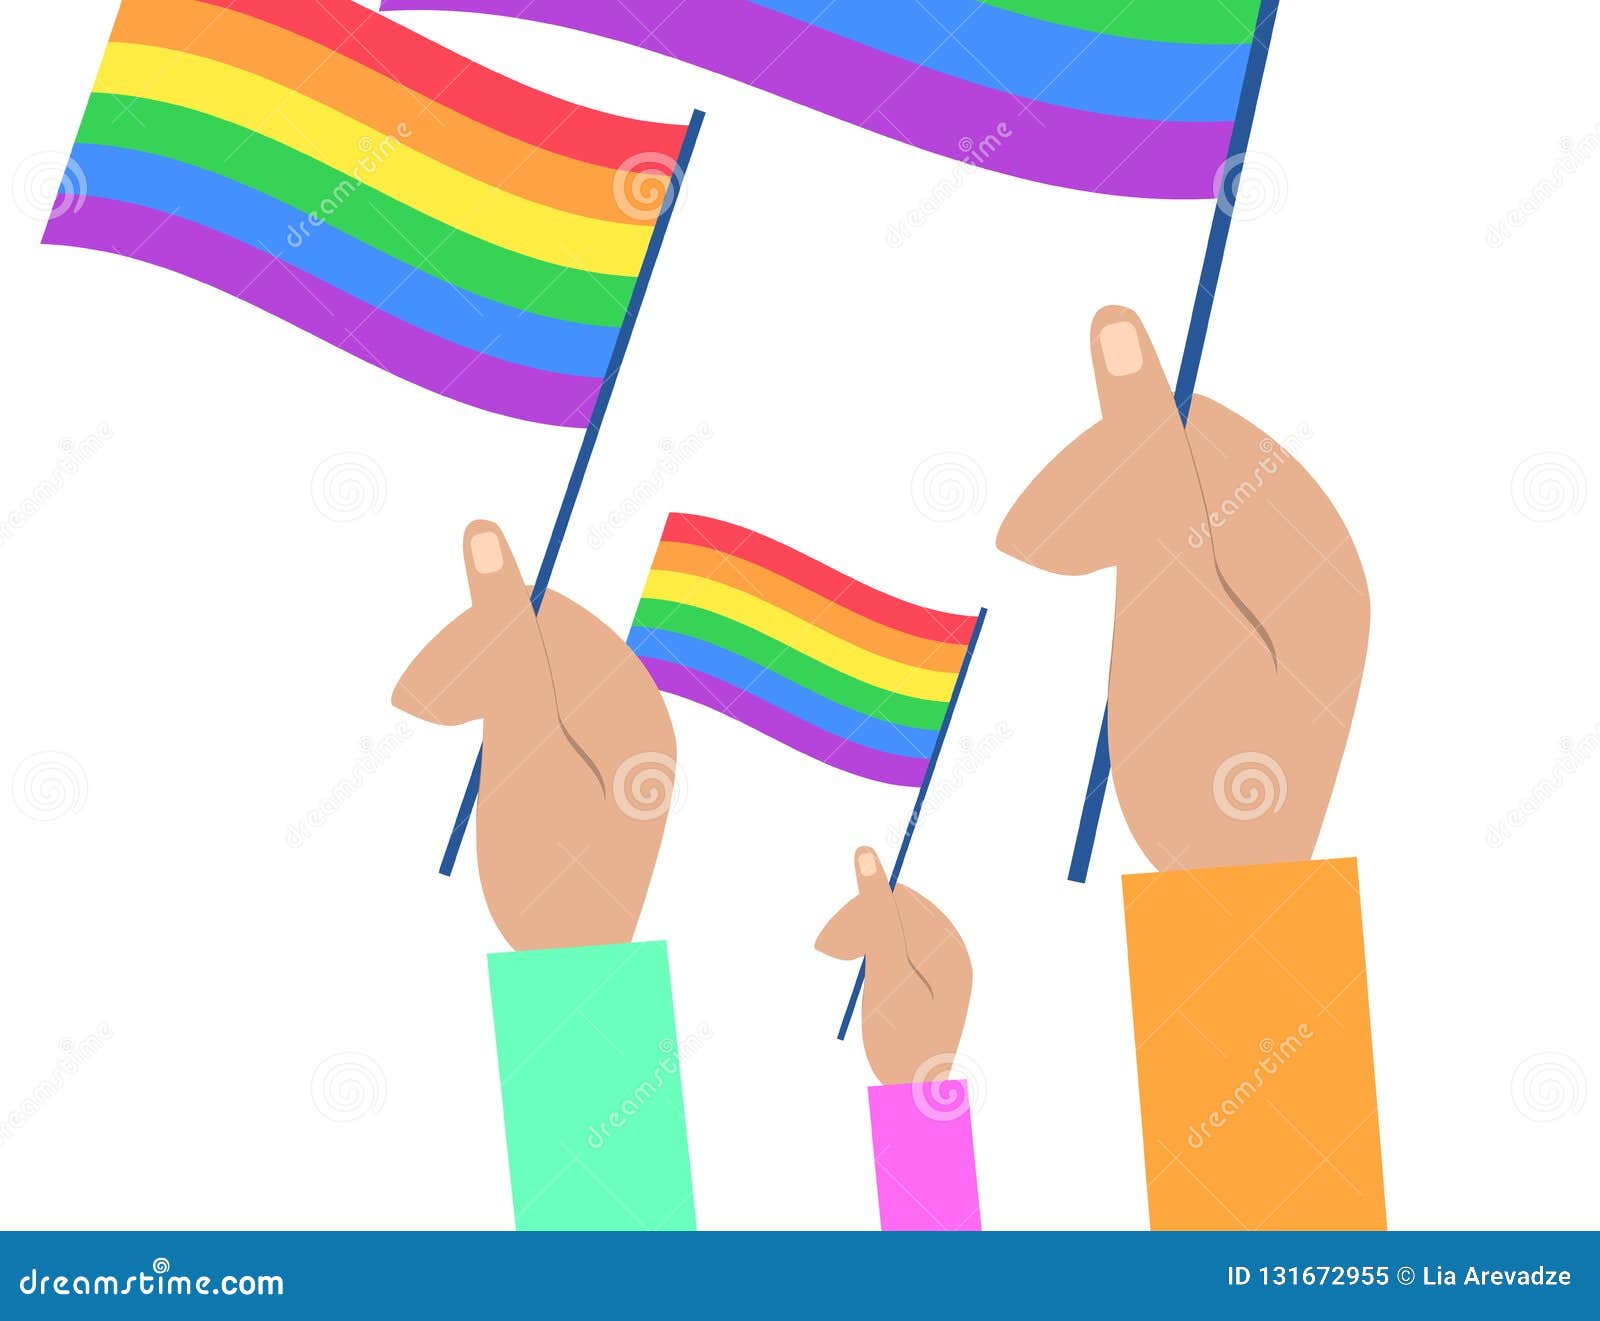 gay pride rainbow vector